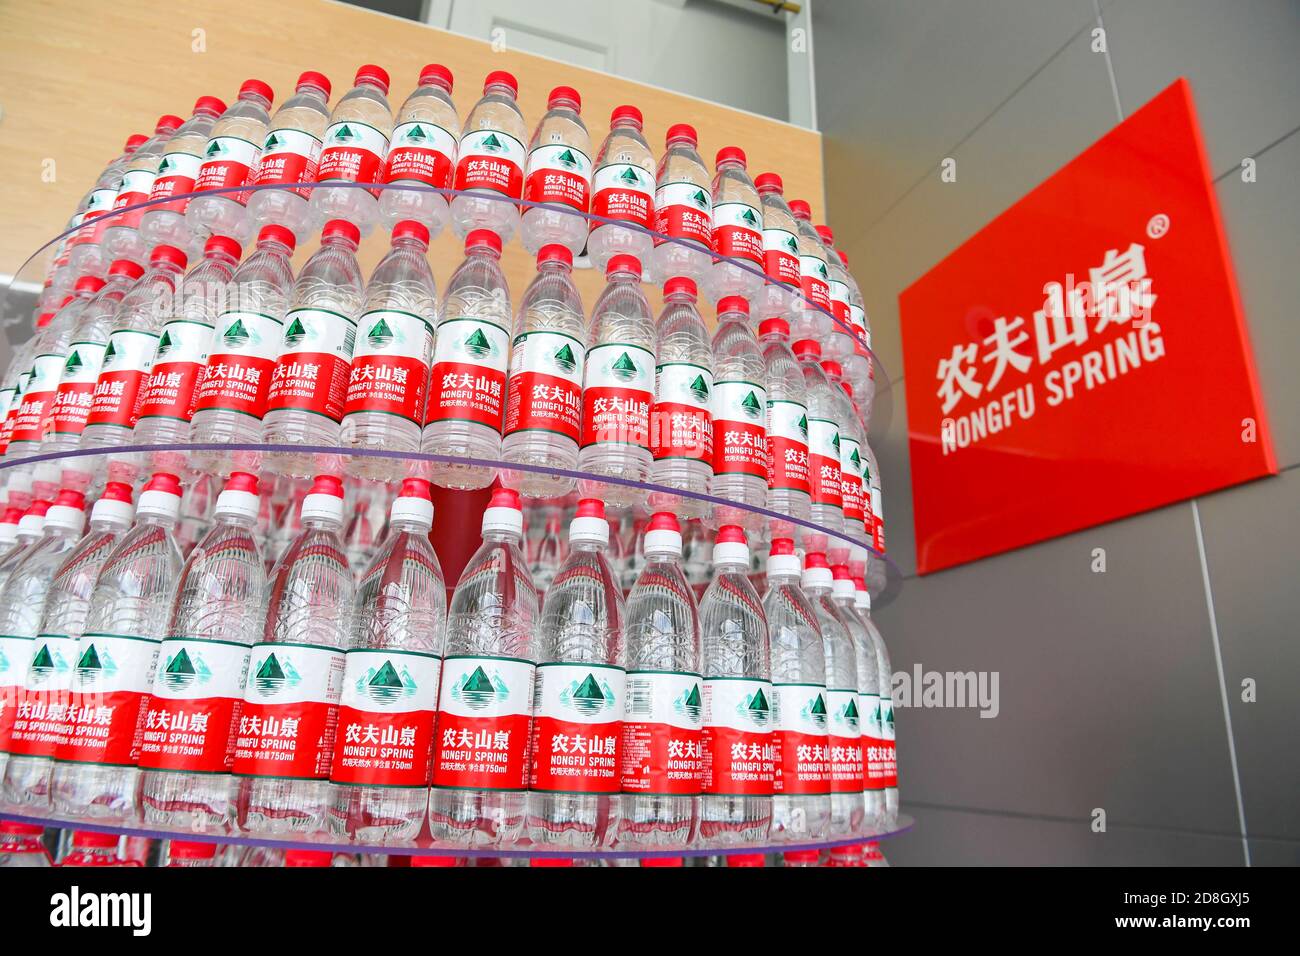 --FEILE--Wasserflaschen, die von Nongfu Spring, einem chinesischen Wasserflaschen- und Getränkeunternehmen, hergestellt werden, sind in einer Werkstatt in einer seiner Faktori gut angeordnet Stockfoto